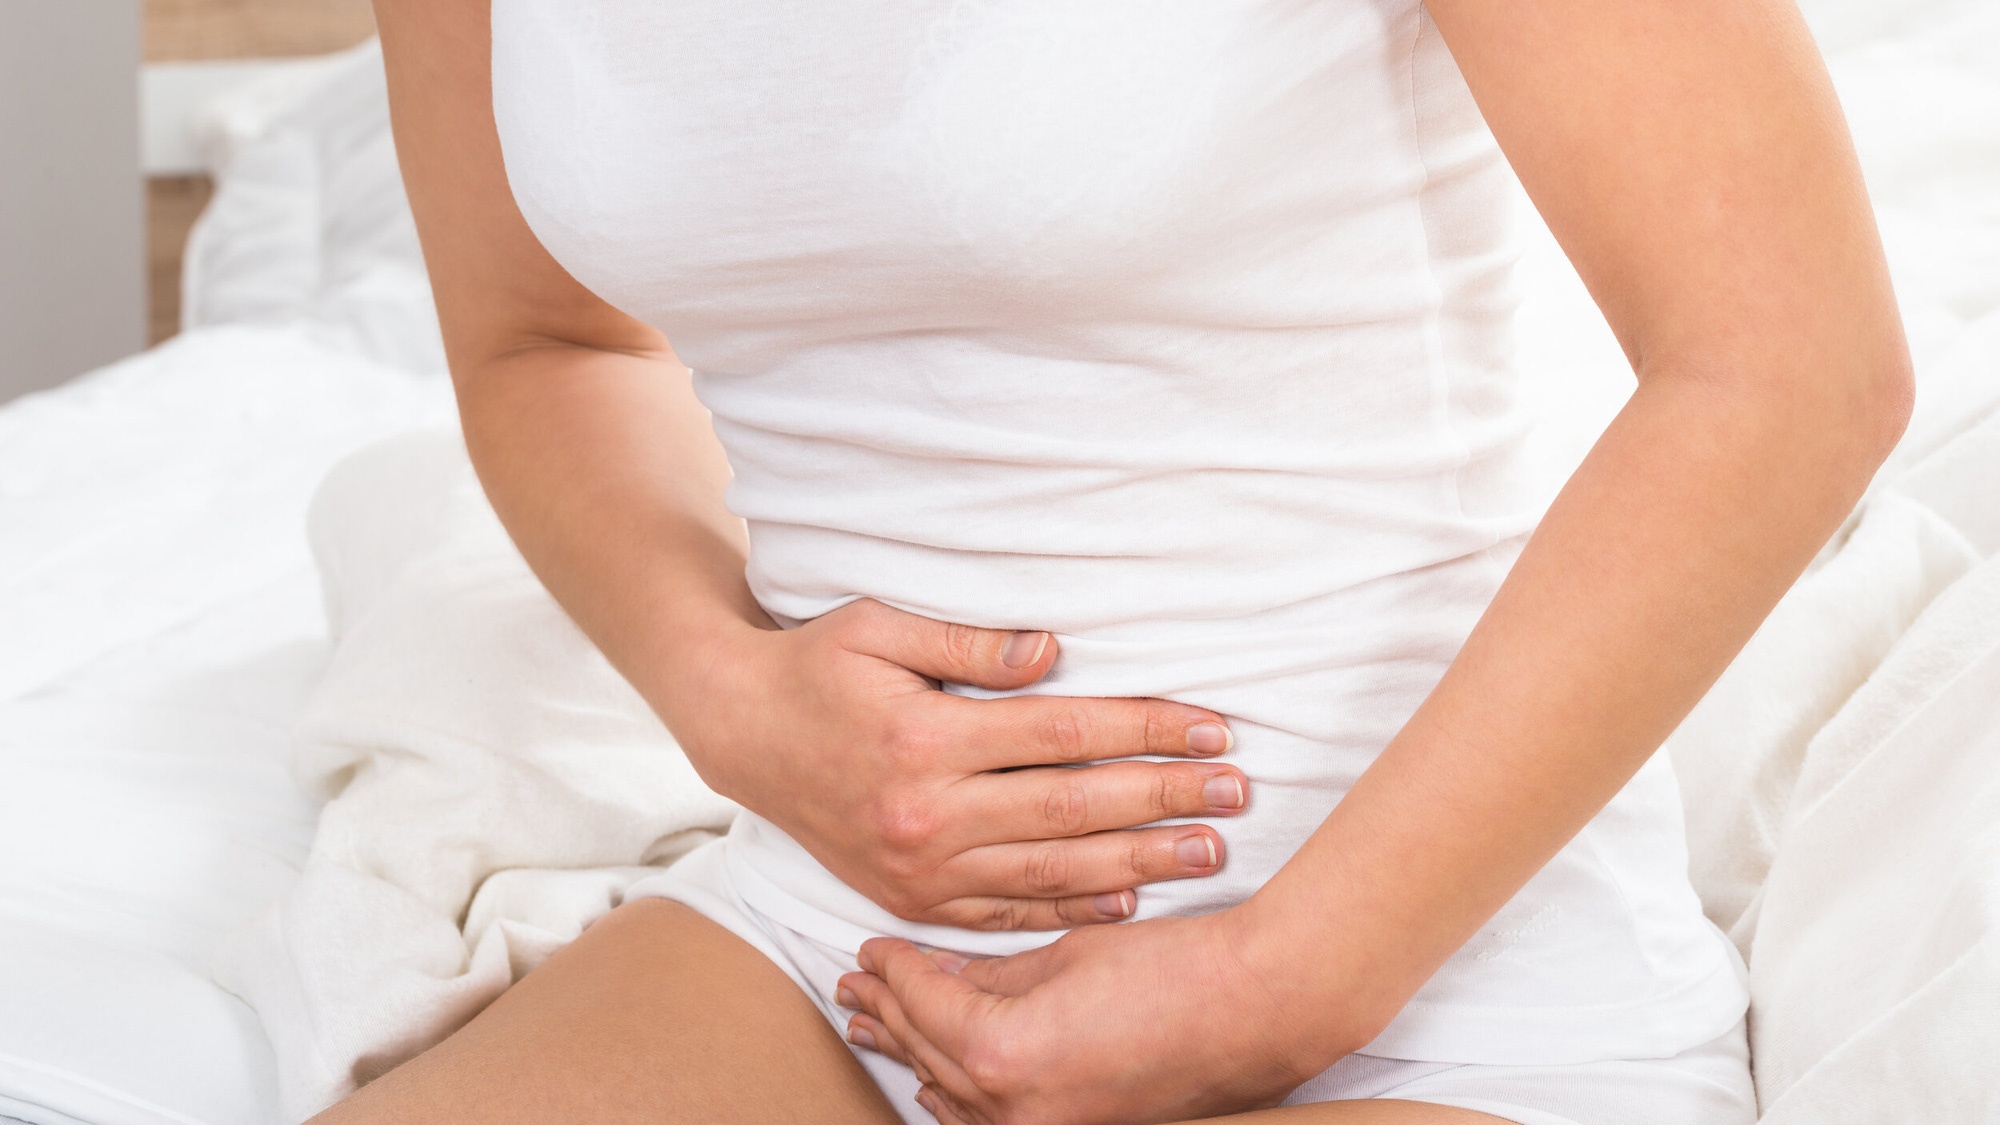 Có những phương pháp chẩn đoán nào được sử dụng để xác định nguyên nhân gây ra đau quặn giữa bụng trên rốn?
